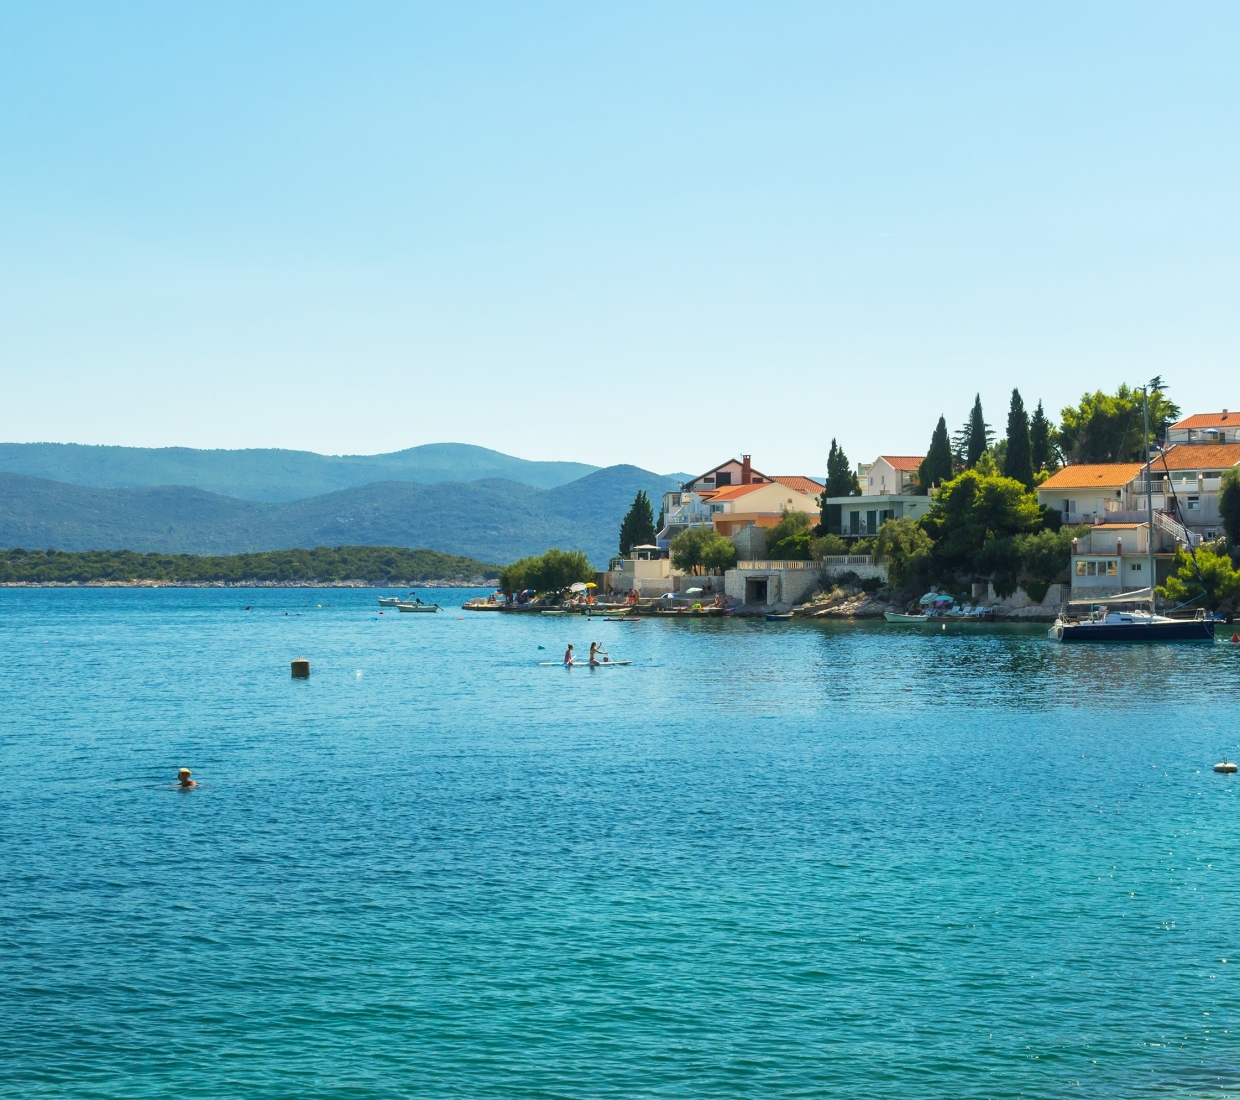 Seleção dos melhores e mais bonitos hotéis e casas de férias em Dalmatian Coast